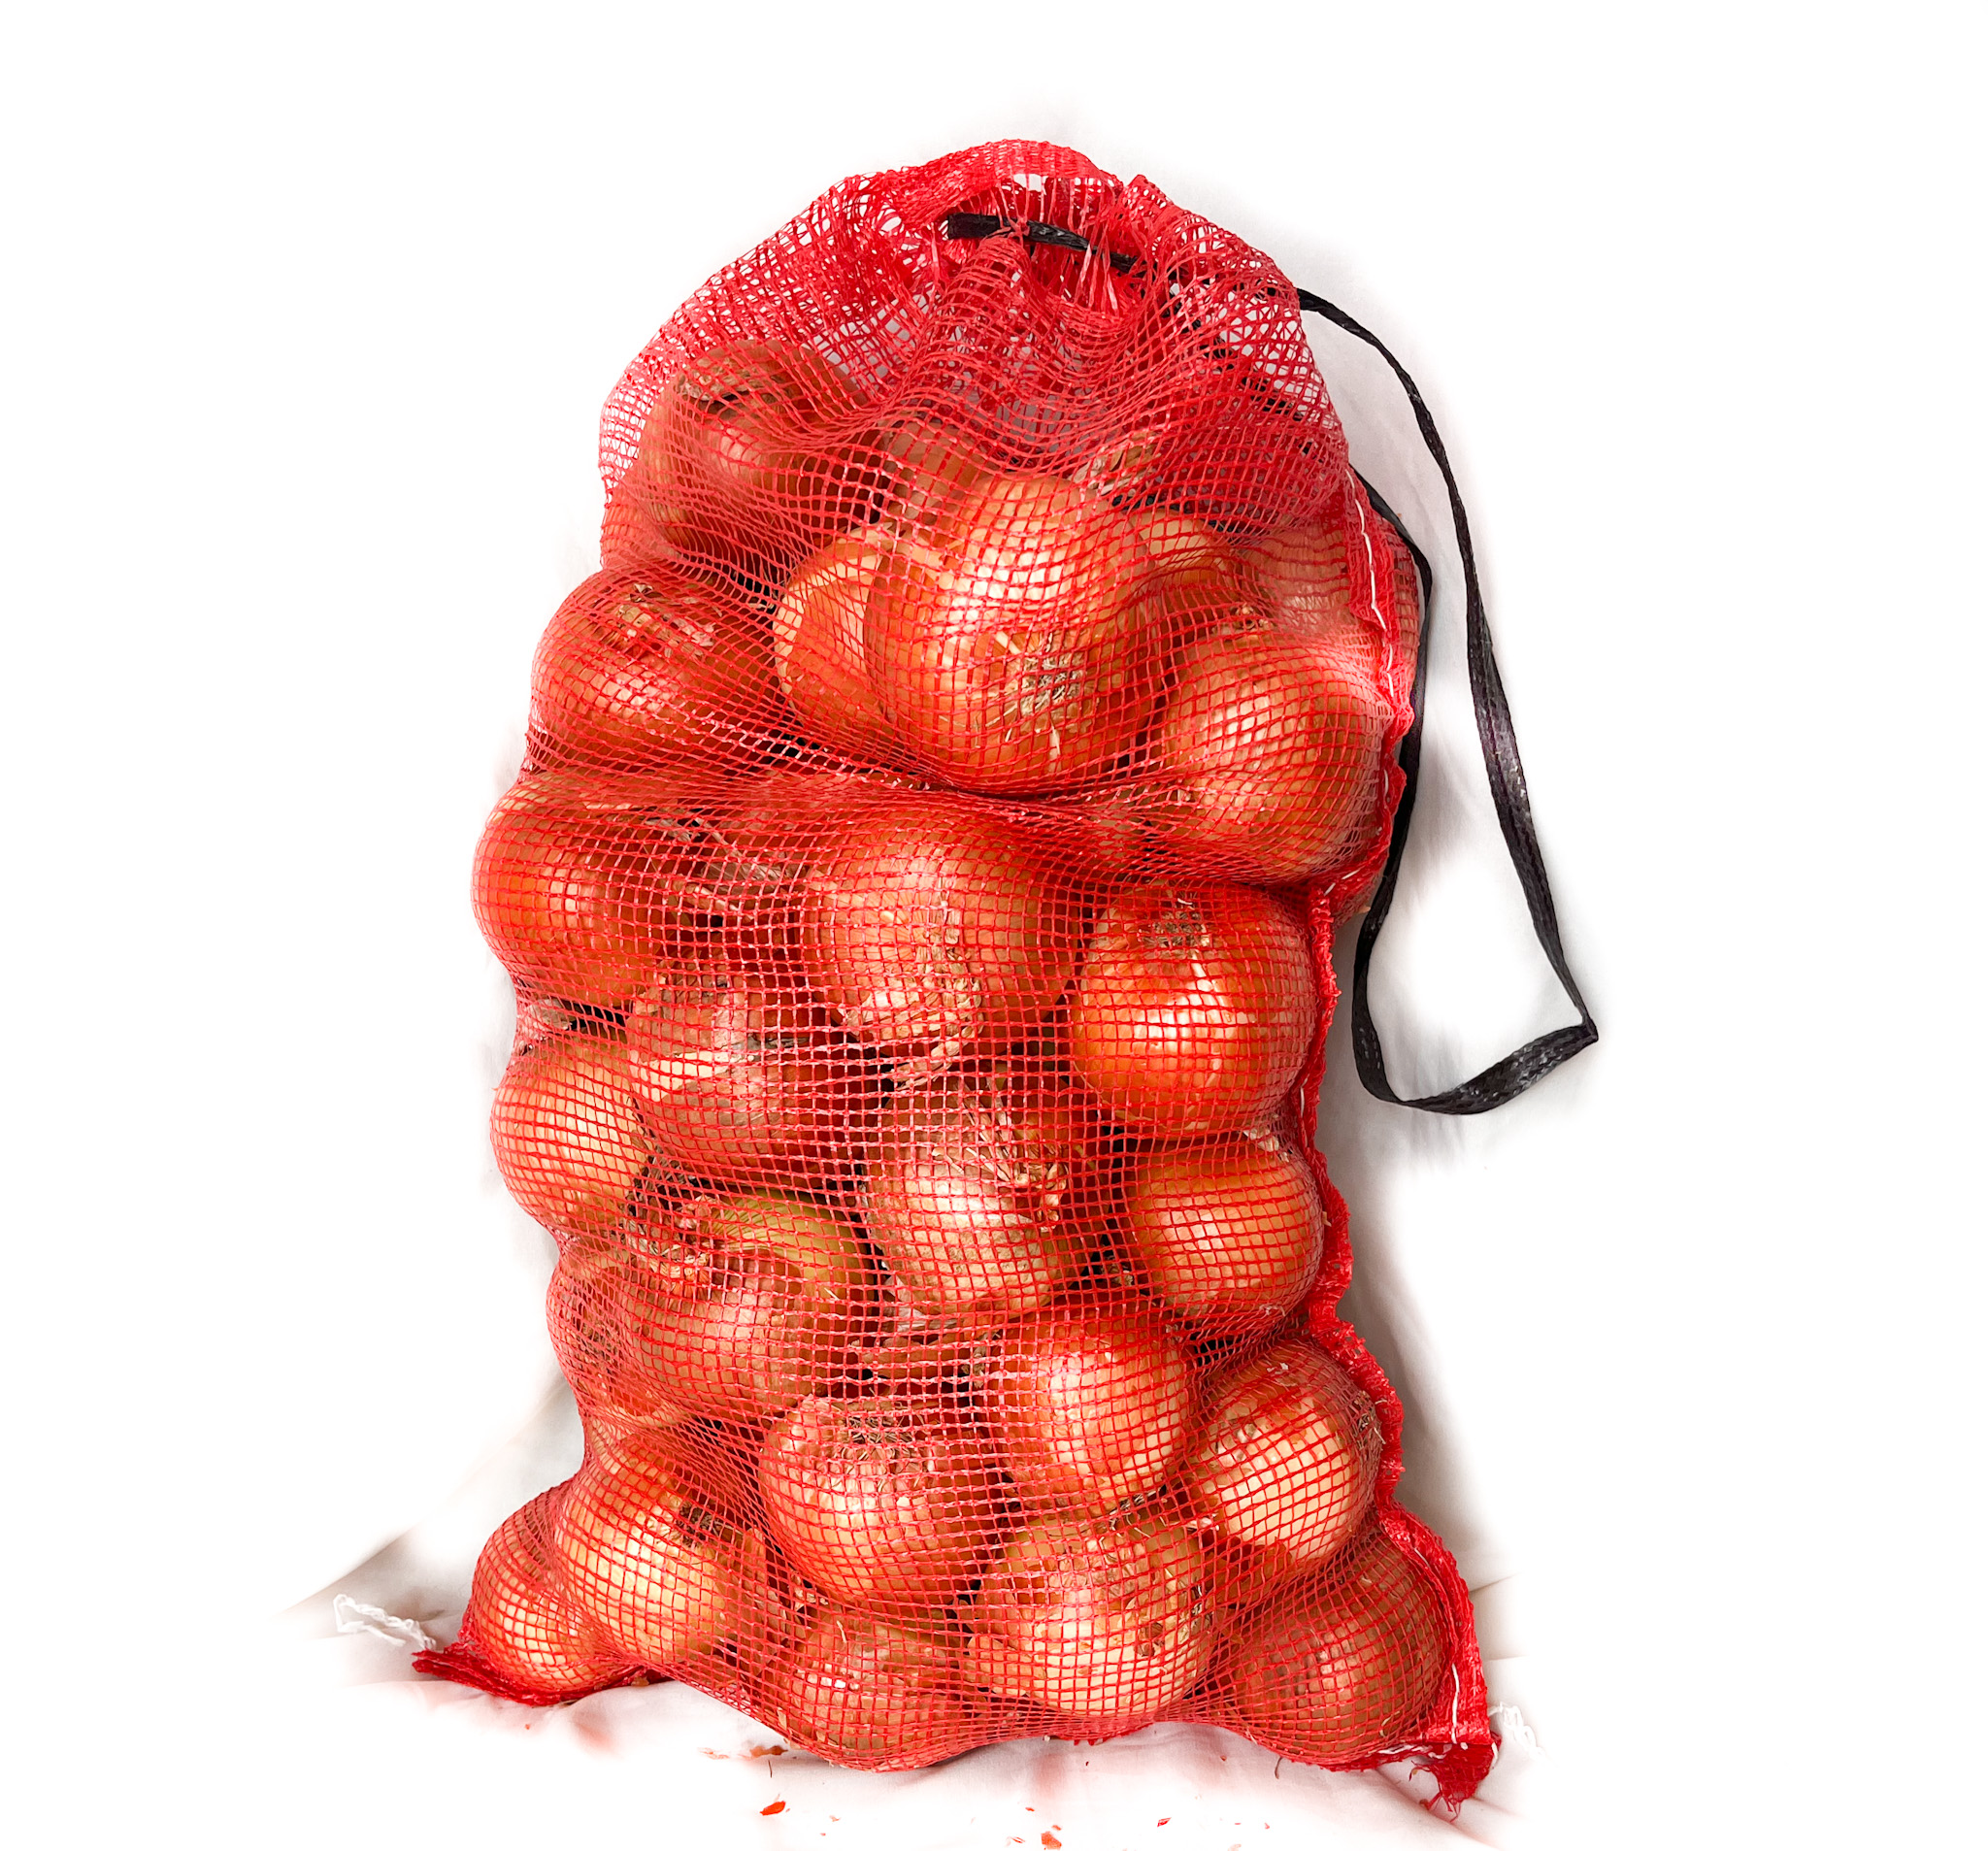 25 lbs onion bag